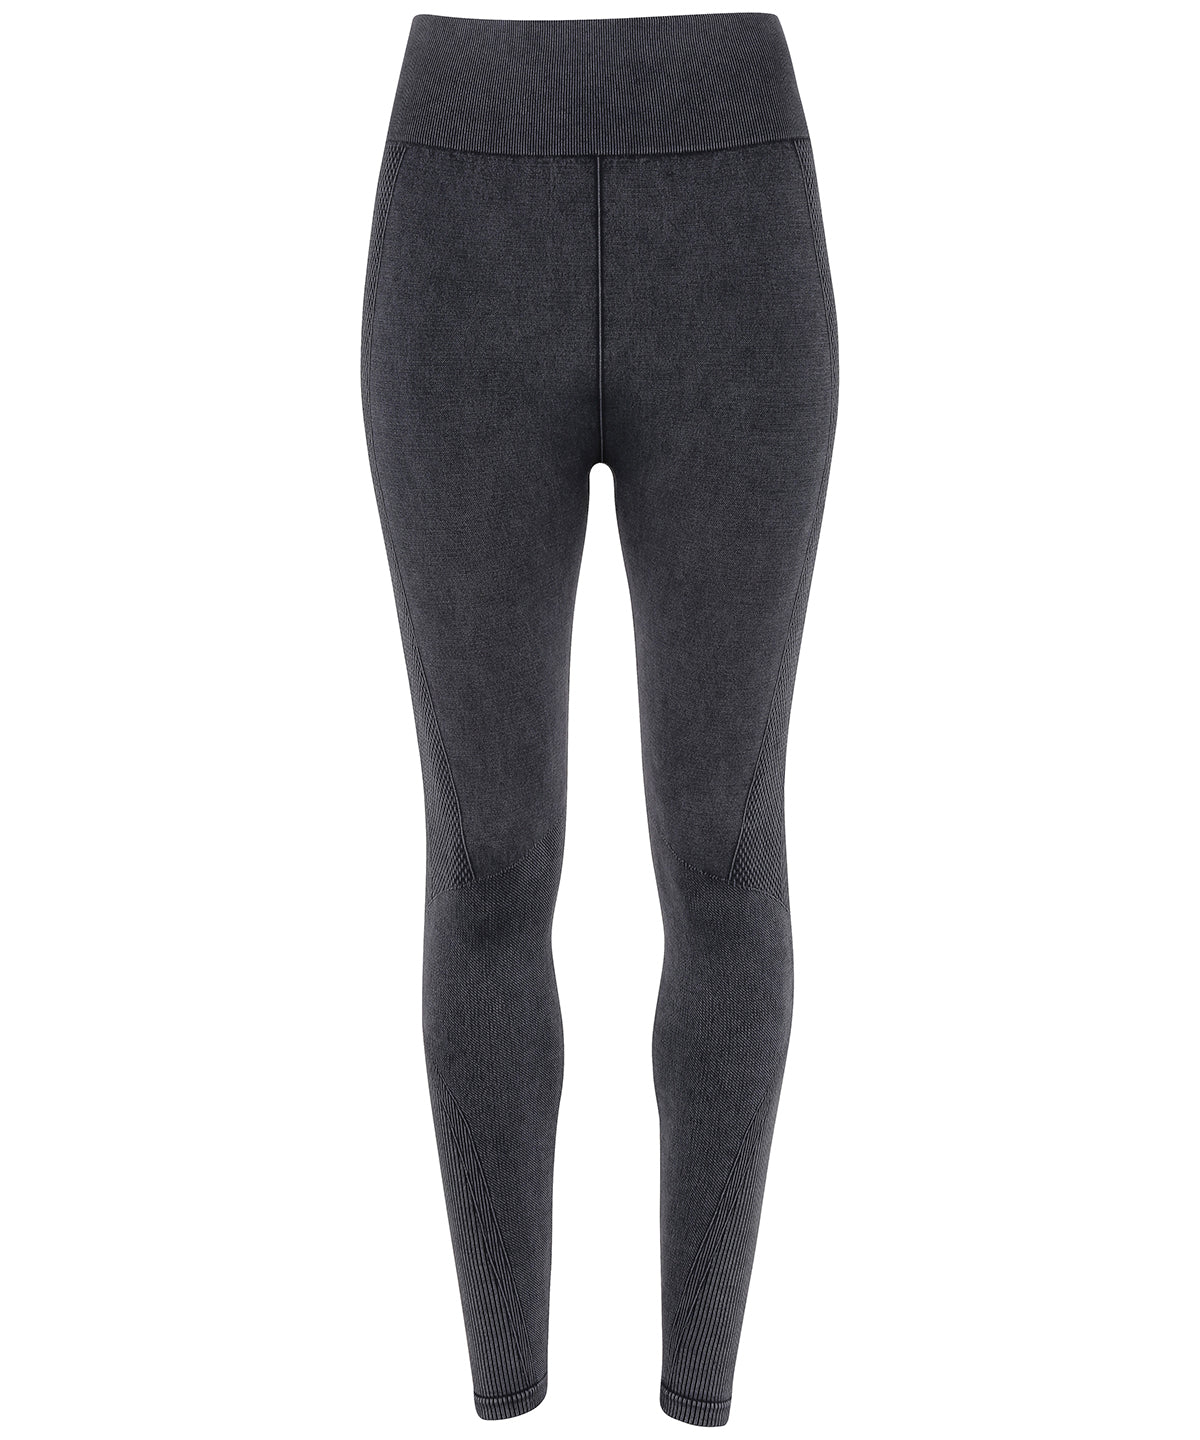 High Waist Stretchy Denim Look Jeggings Lady Skinny Leggings Jeans Elastic  Pants | eBay